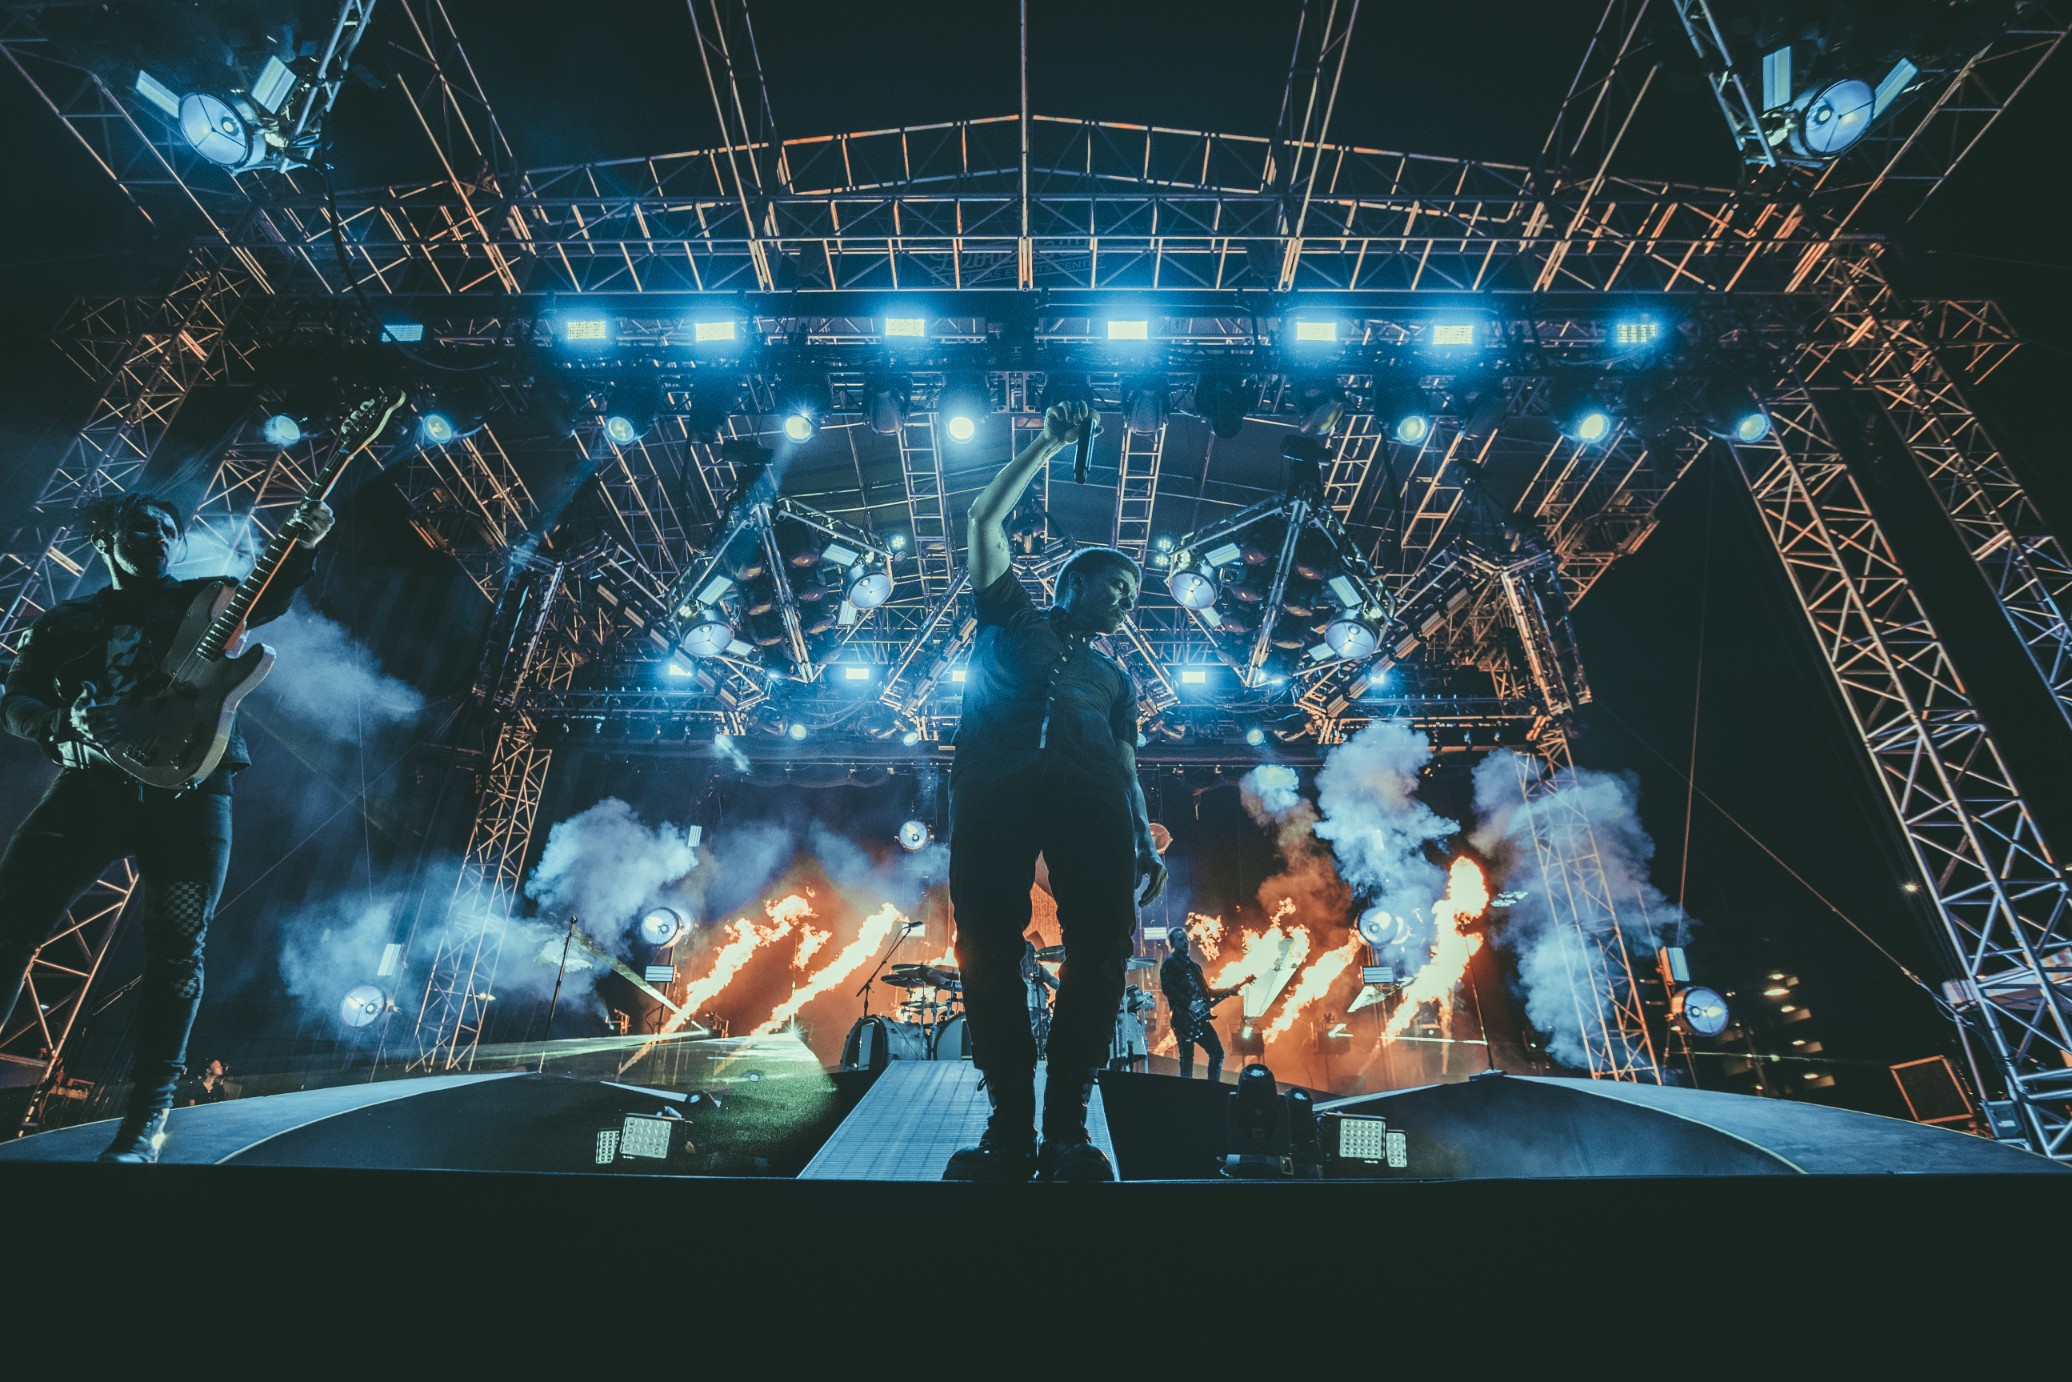 Godsmack, Shinedown, and Like a Storm